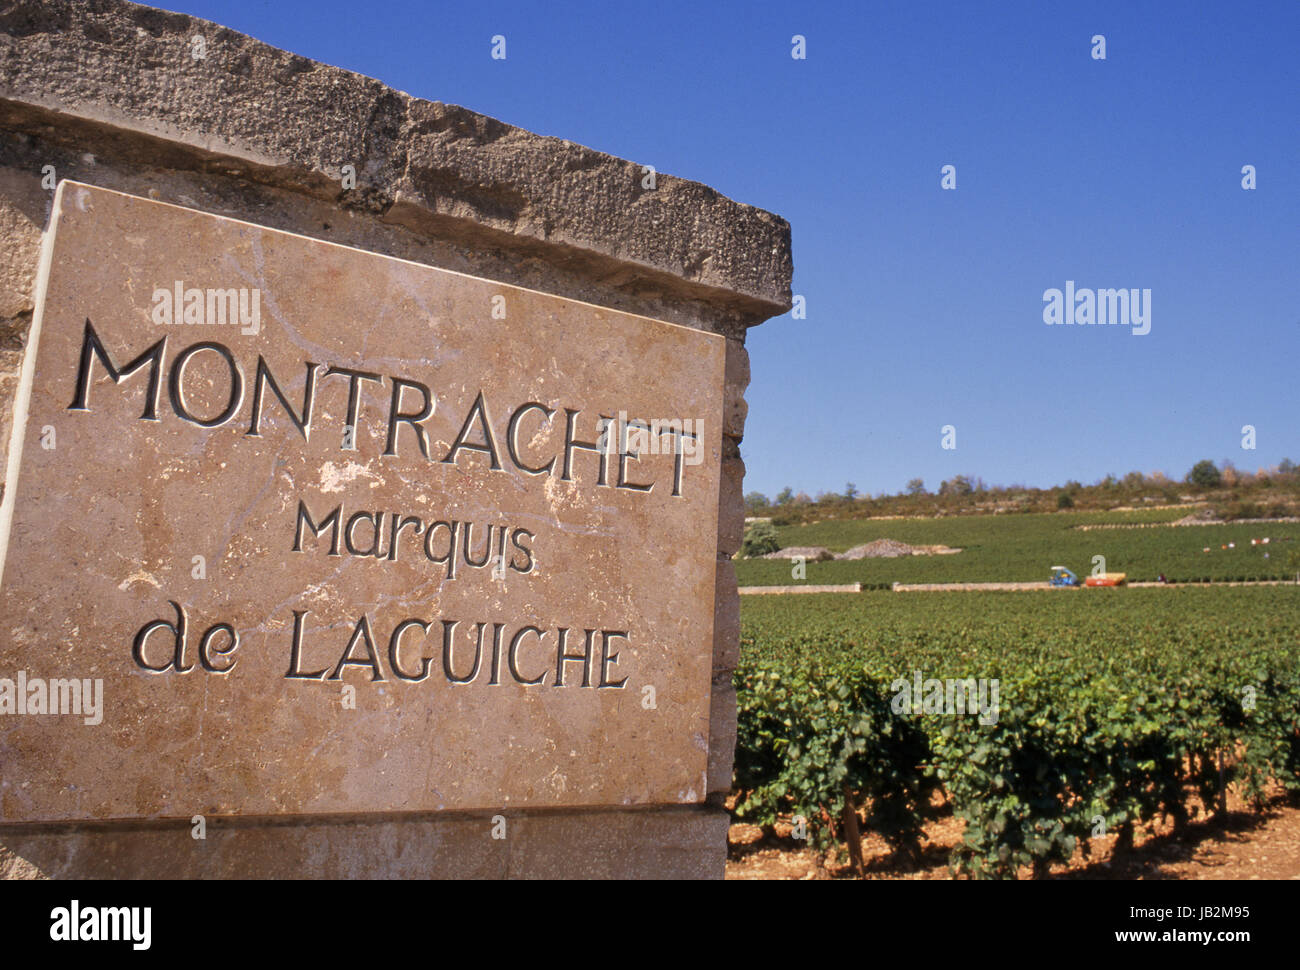 MONTRACHET Marquis de Laguiche plaque de pierre à l'entrée du pilier pour la parcelle de Grand Cru 'Le Montrachet' vignoble. Puligny-Montrachet, Bourgogne, France Banque D'Images